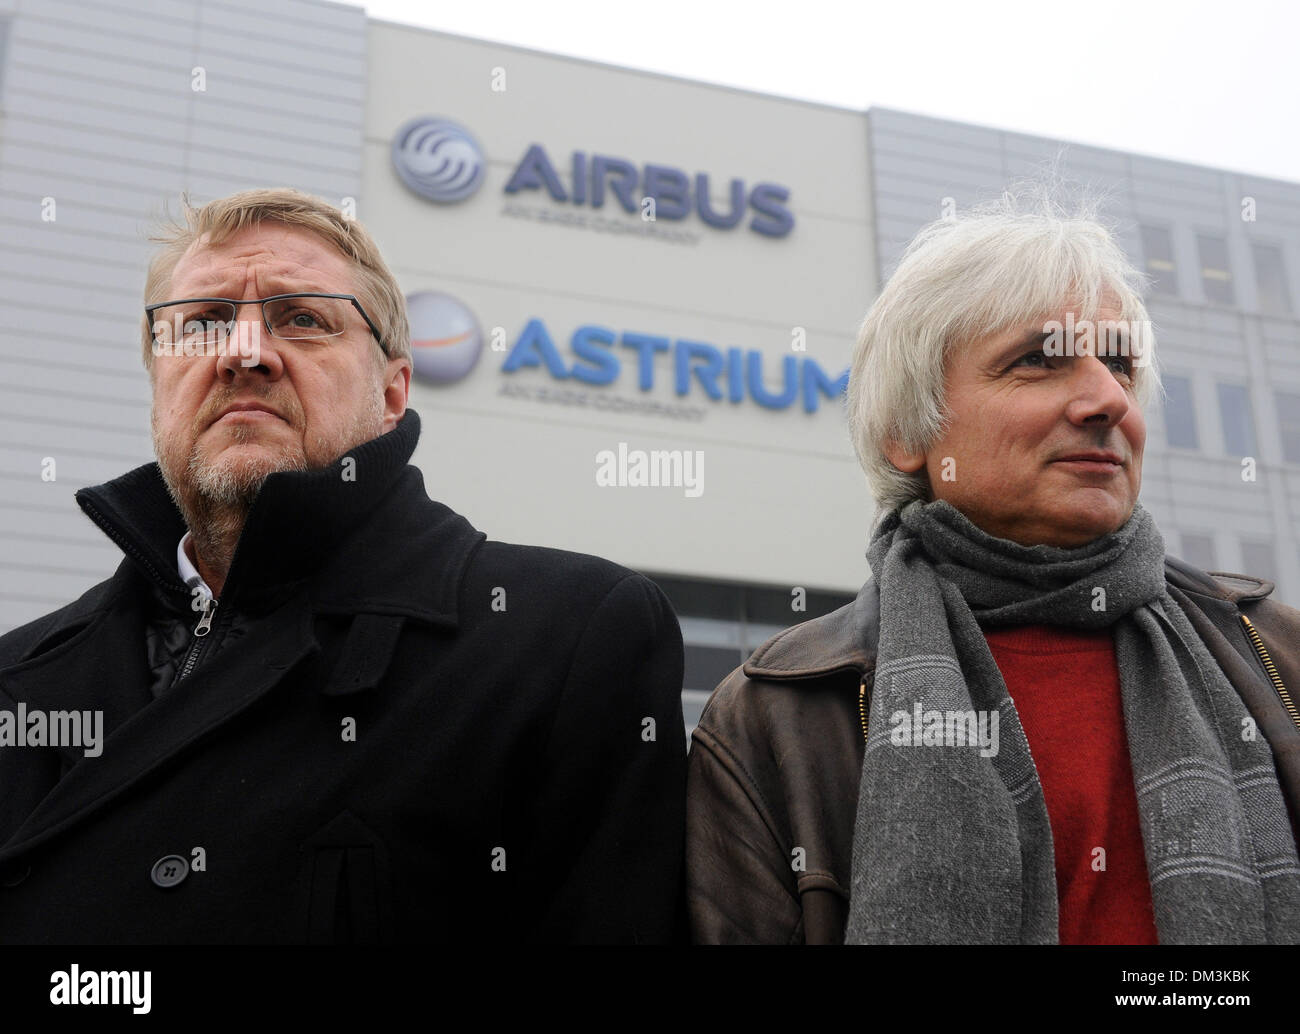 Brême, Allemagne. Dec 11, 2013. Président du conseil d'entreprise Airbus dans l'usine de Brême mirobolant, Klaus Ahlborn (L), et vice-président du comité d'entreprise d'Astrium GmbH Bjoerk Neumann-Moebius, faire une déclaration à l'extérieur de l'usine Airbus et Astrium à Brême, Allemagne, le 11 décembre 2013. Airbus et Astrium ont été informés de l'annonce de plans d'austérité de la maison-mère EADS, à la réunion du comité d'entreprise plus tôt aujourd'hui. Photo : INGO WAGNER/dpa/Alamy Live News Banque D'Images